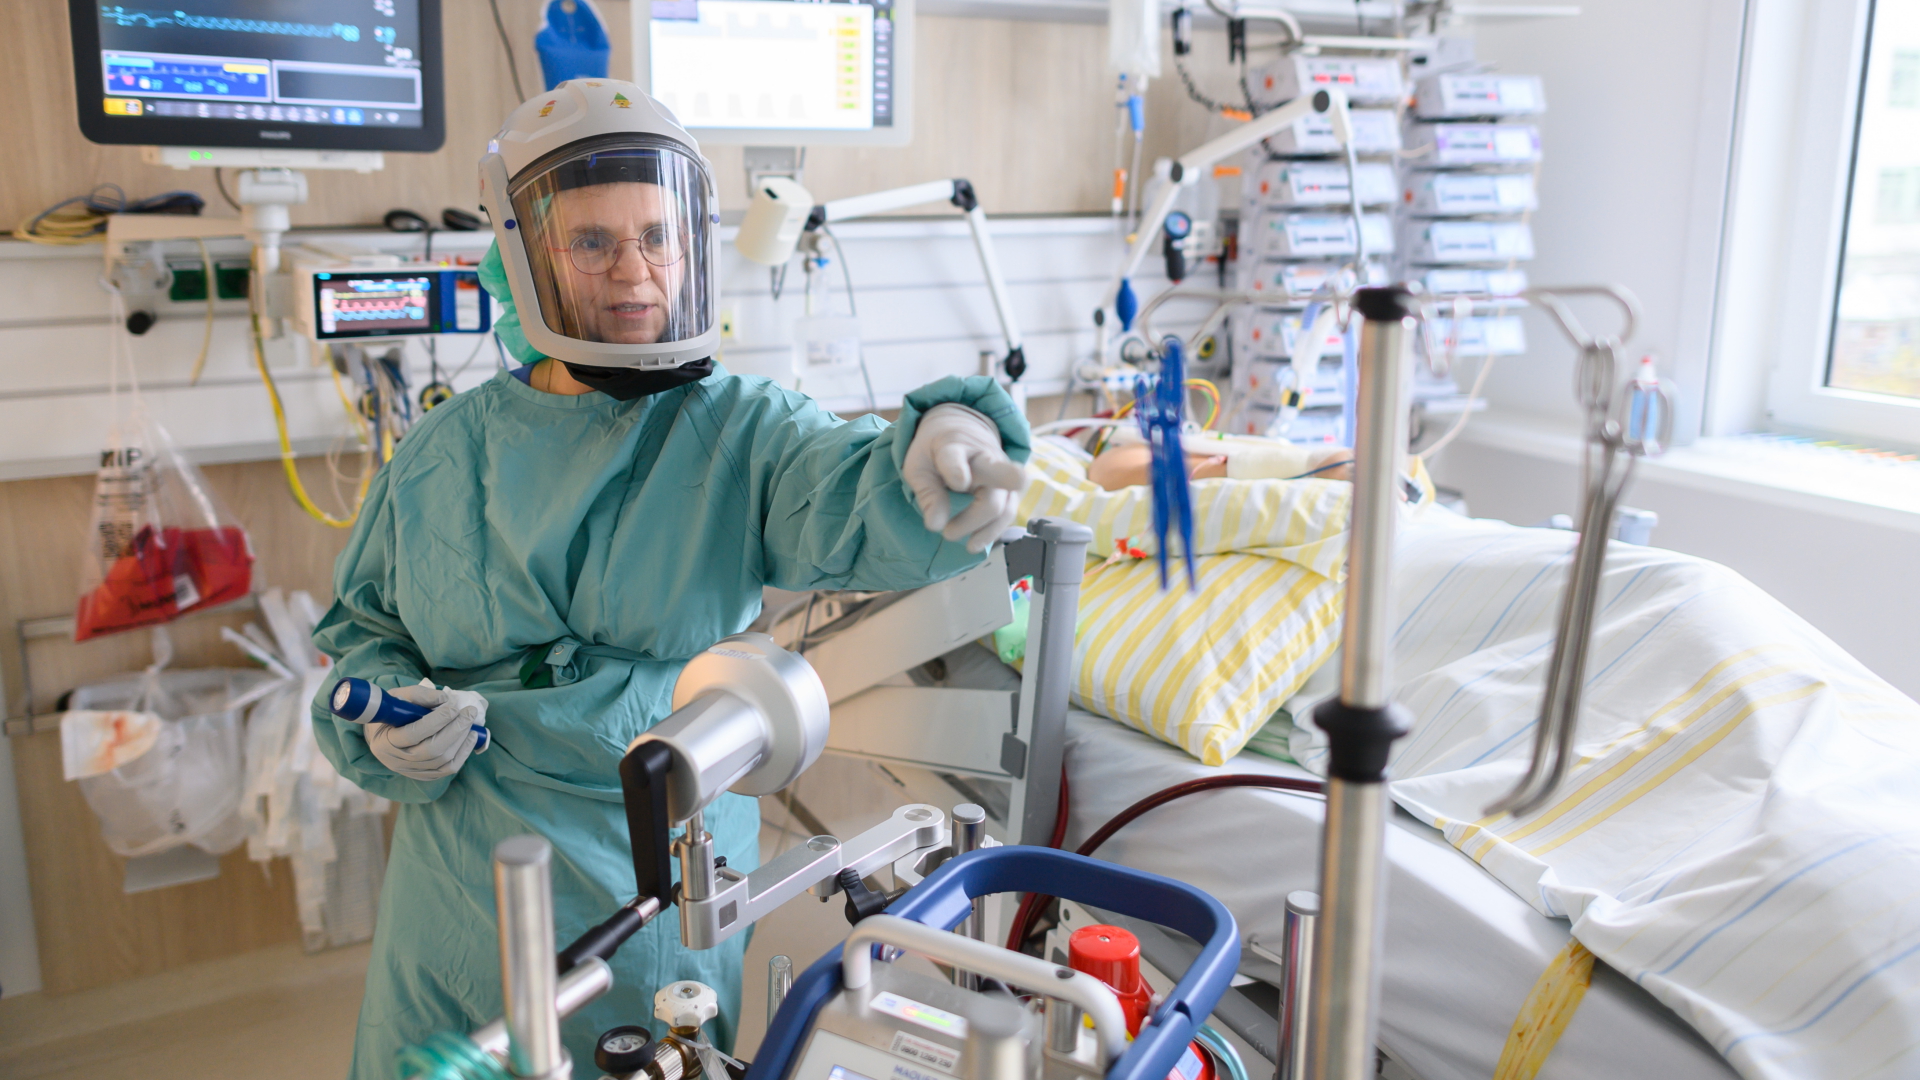 Uniklinik Dresden: „Nie so viele Lungenversagen gesehen“